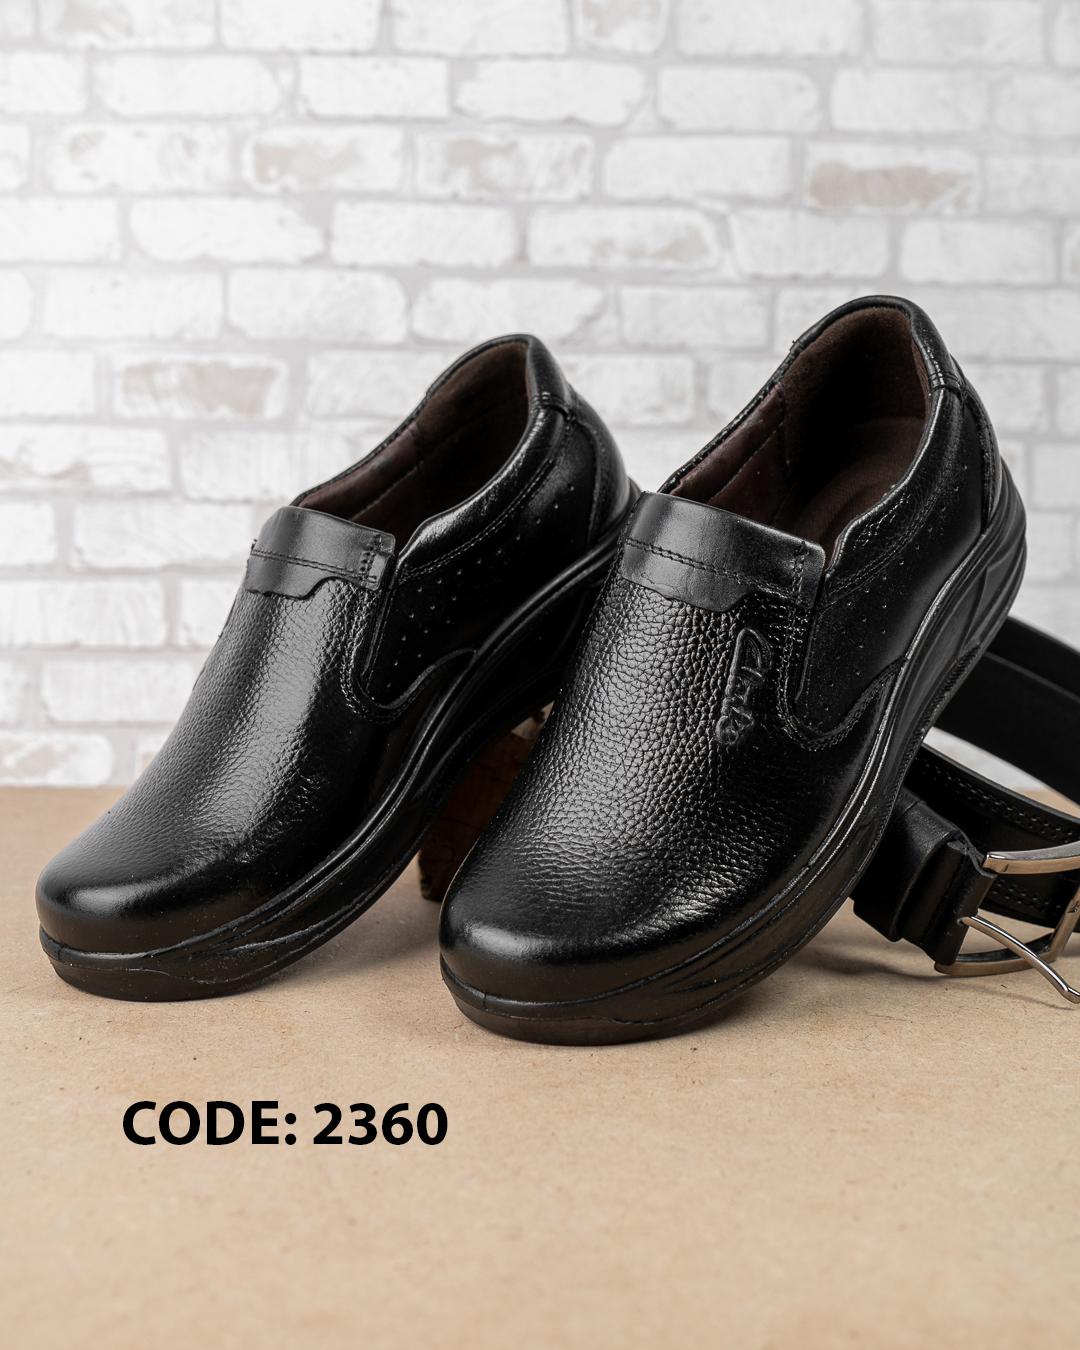  کفش مردانه بدون بند چرمی تمام مشکی Clarks 2360 